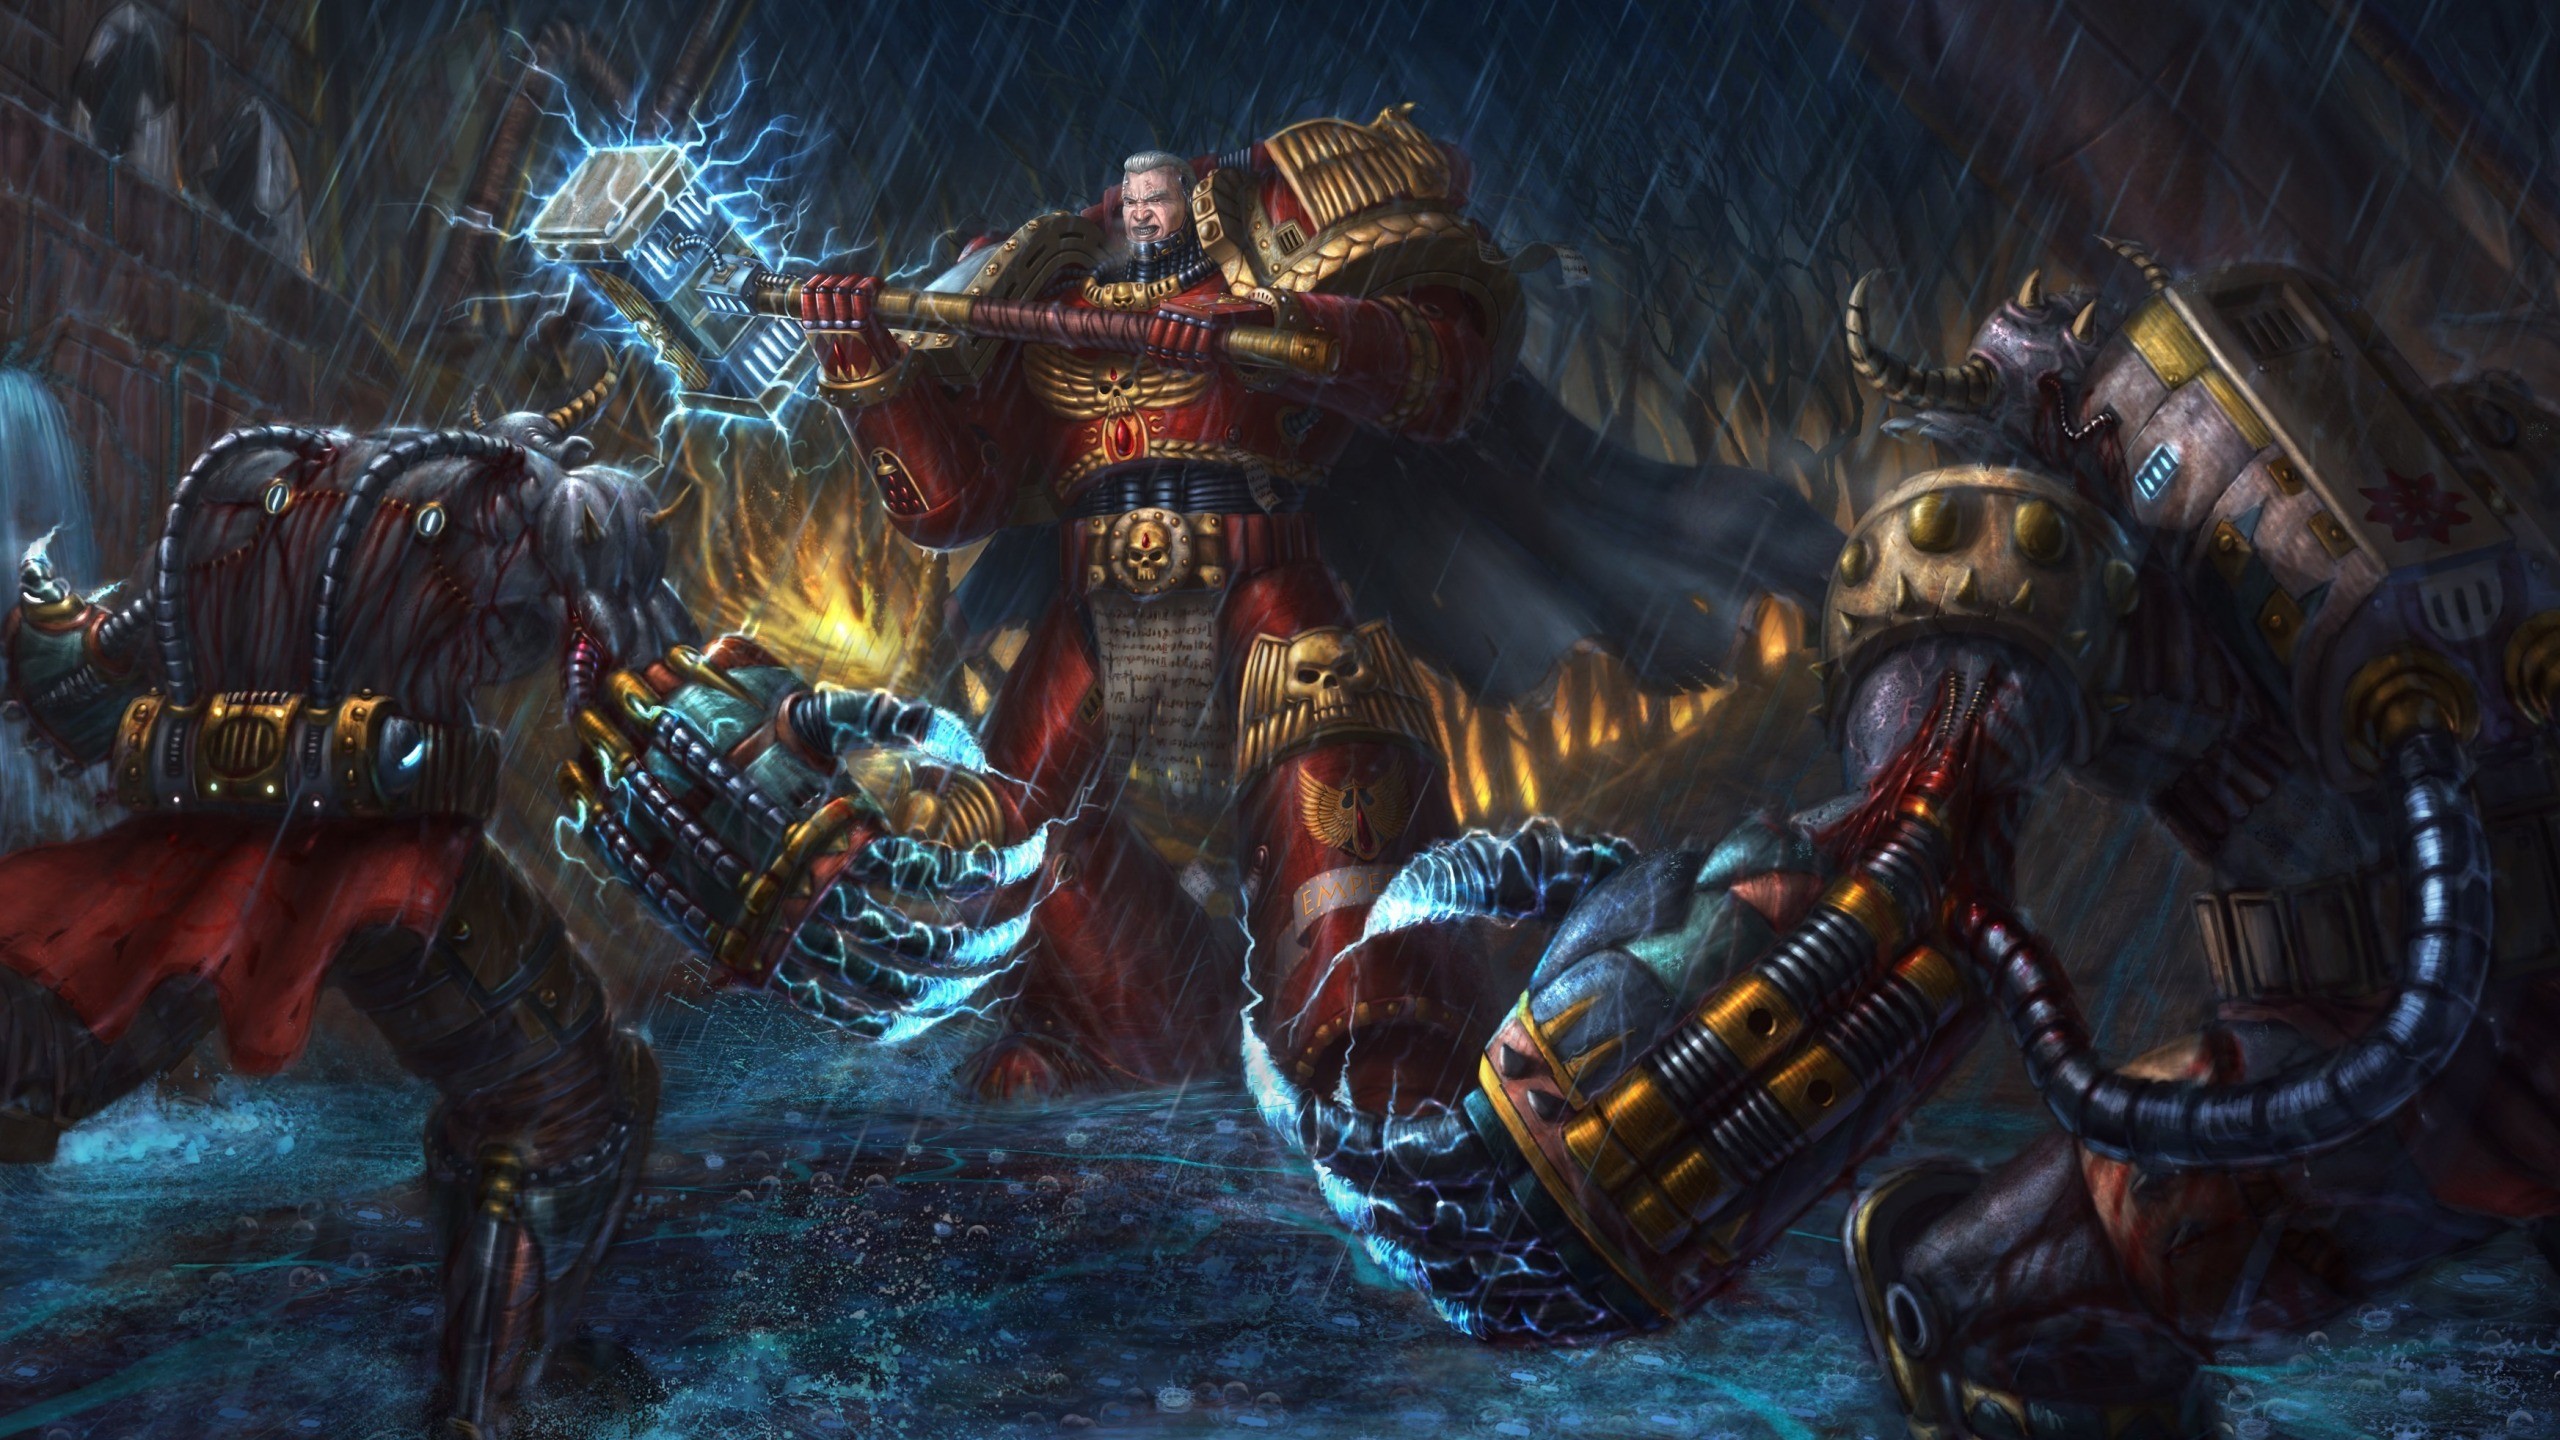 2560x1440 warhammer-40k-space-marine.jpg (2560Ã1440) | Warhammer 40000 | Pinterest | Warhammer  40000 and Warhammer 40K